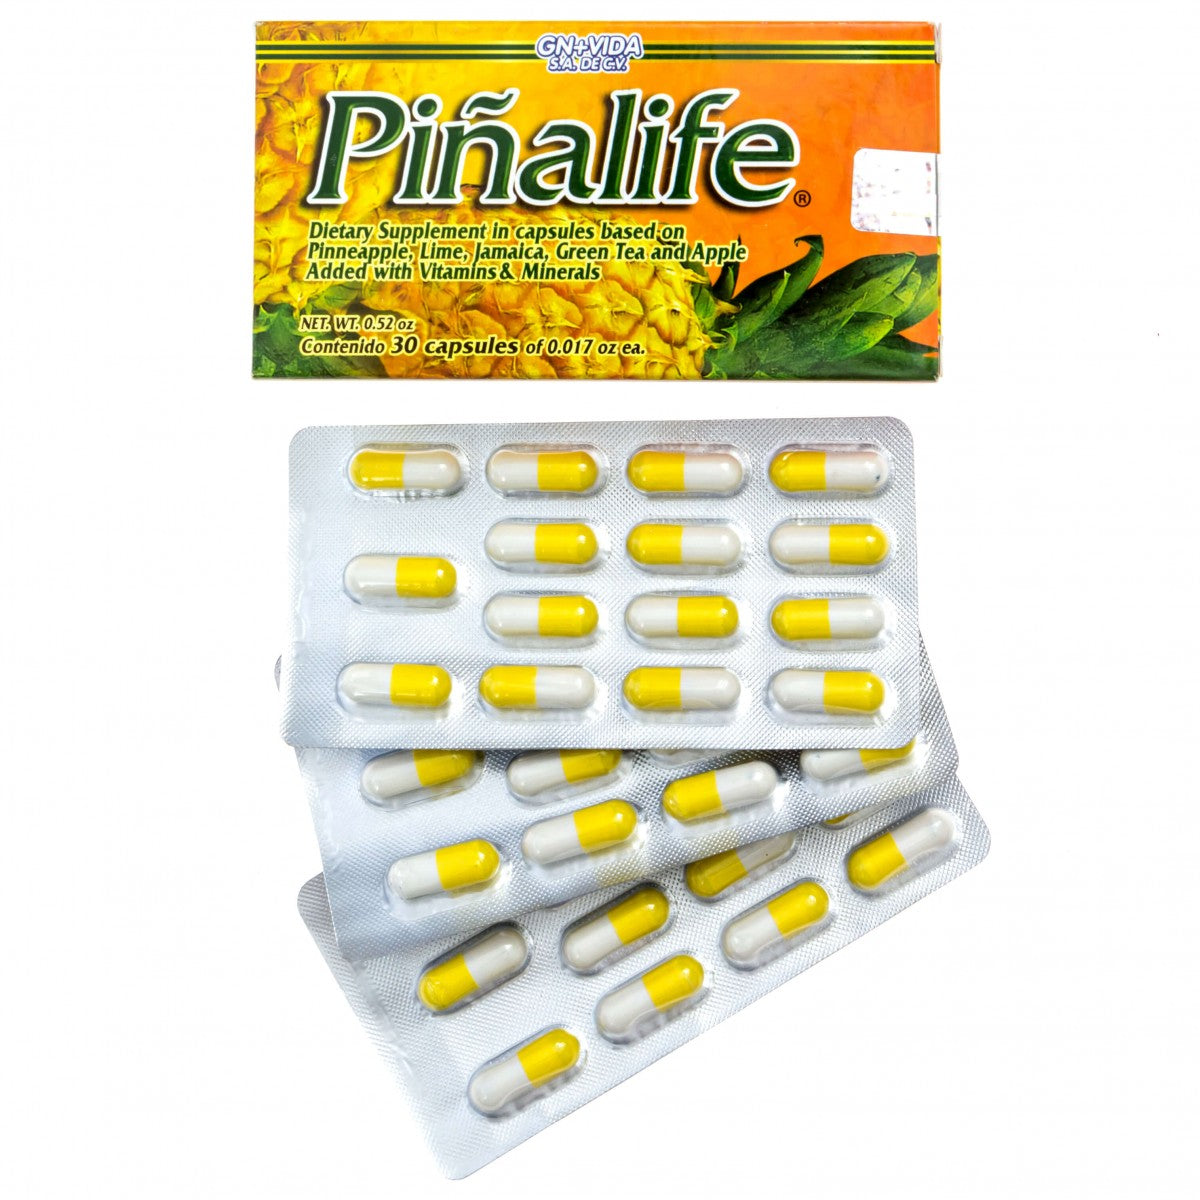 Piñalife capsules